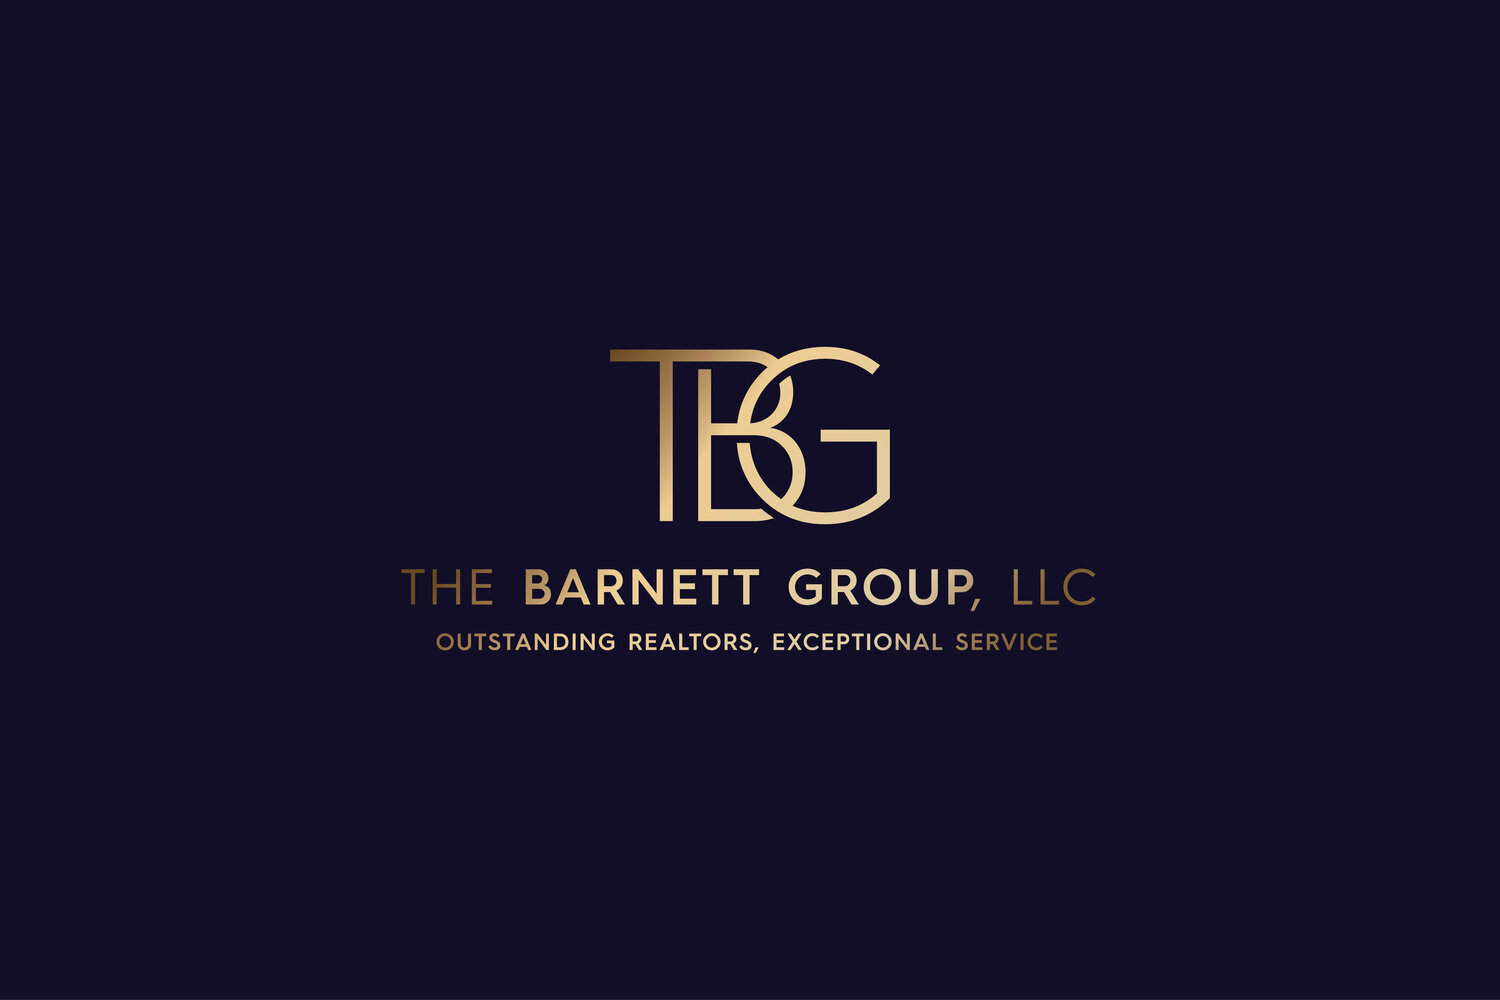 The Barnett Group